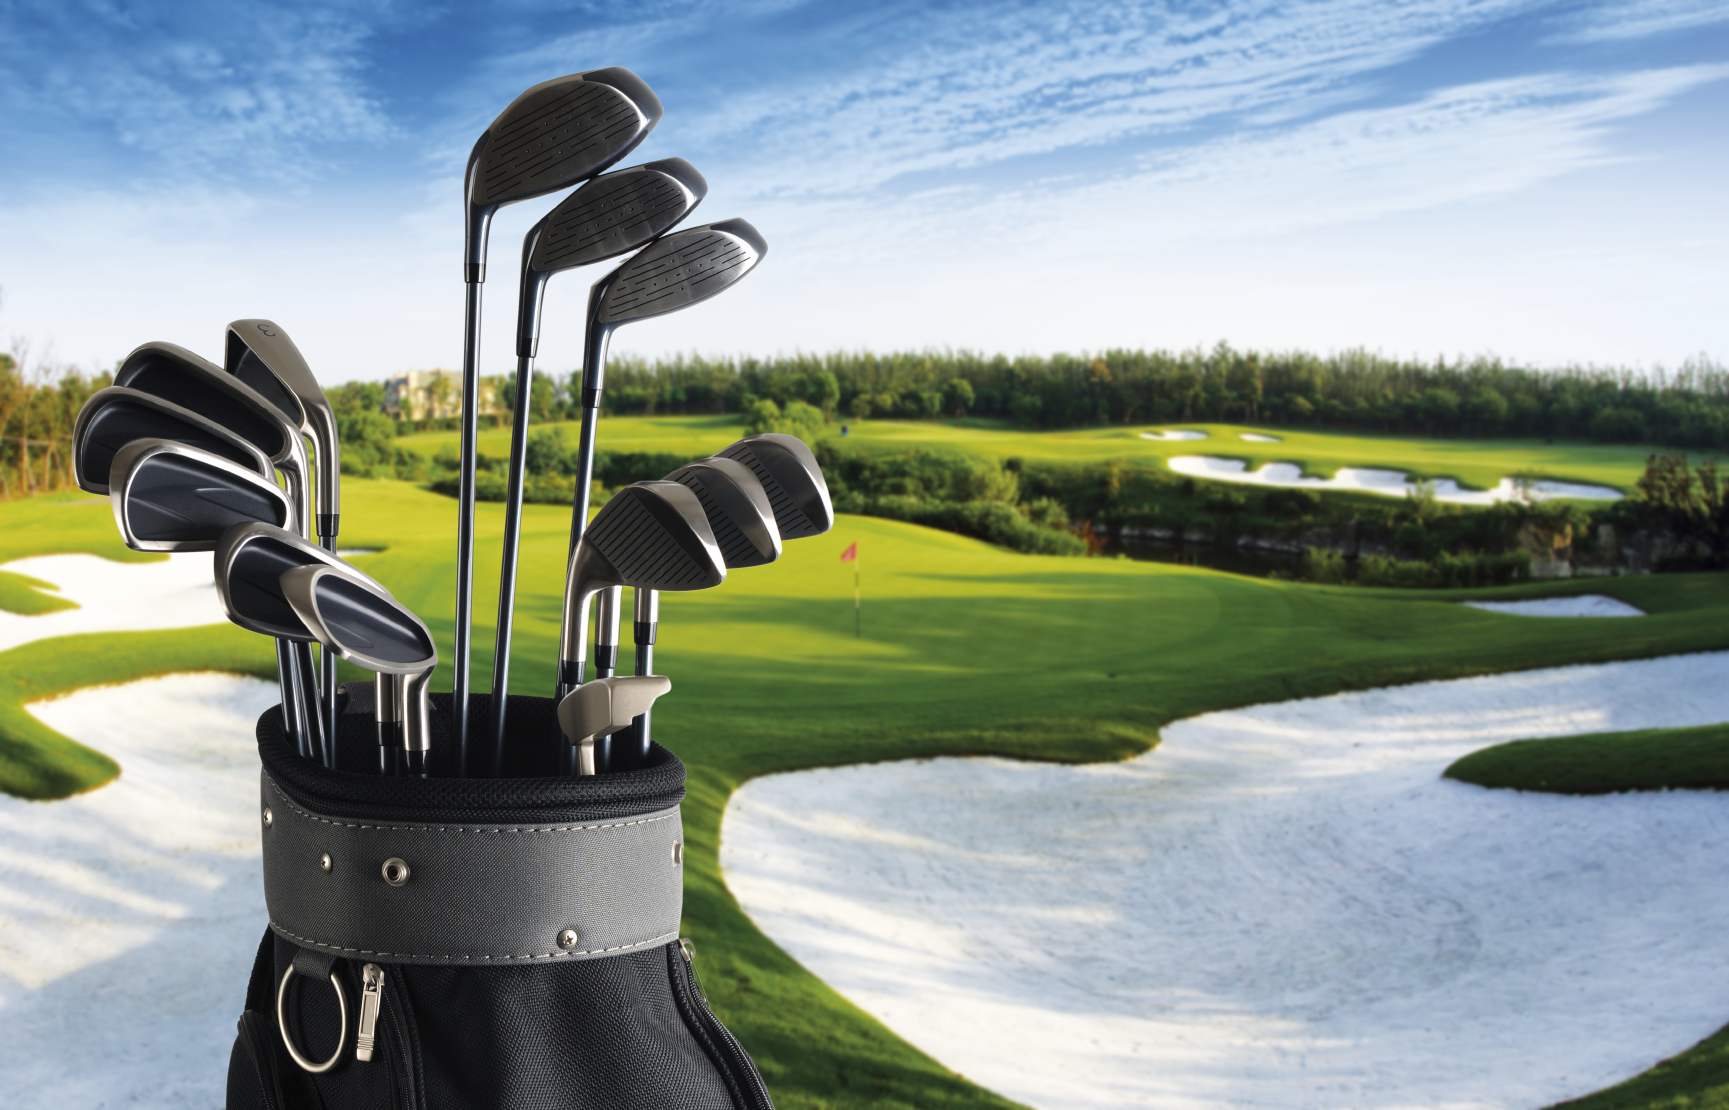 5 Best Websites to Buy Discount Golf Equipment - The Golf Travel Guru